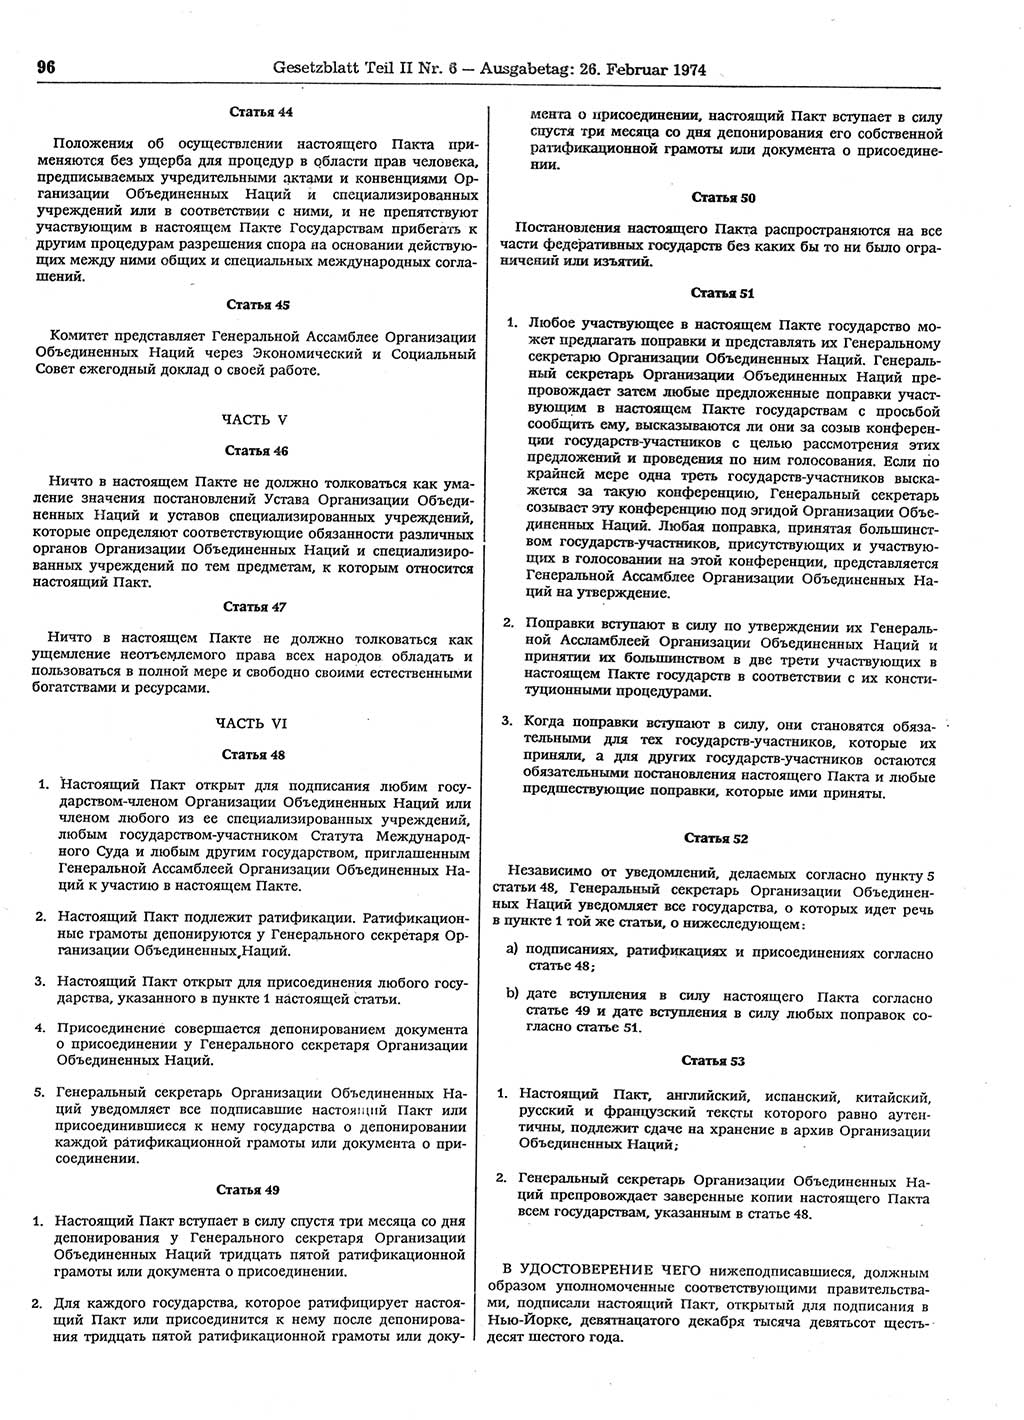 Gesetzblatt (GBl.) der Deutschen Demokratischen Republik (DDR) Teil ⅠⅠ 1974, Seite 96 (GBl. DDR ⅠⅠ 1974, S. 96)